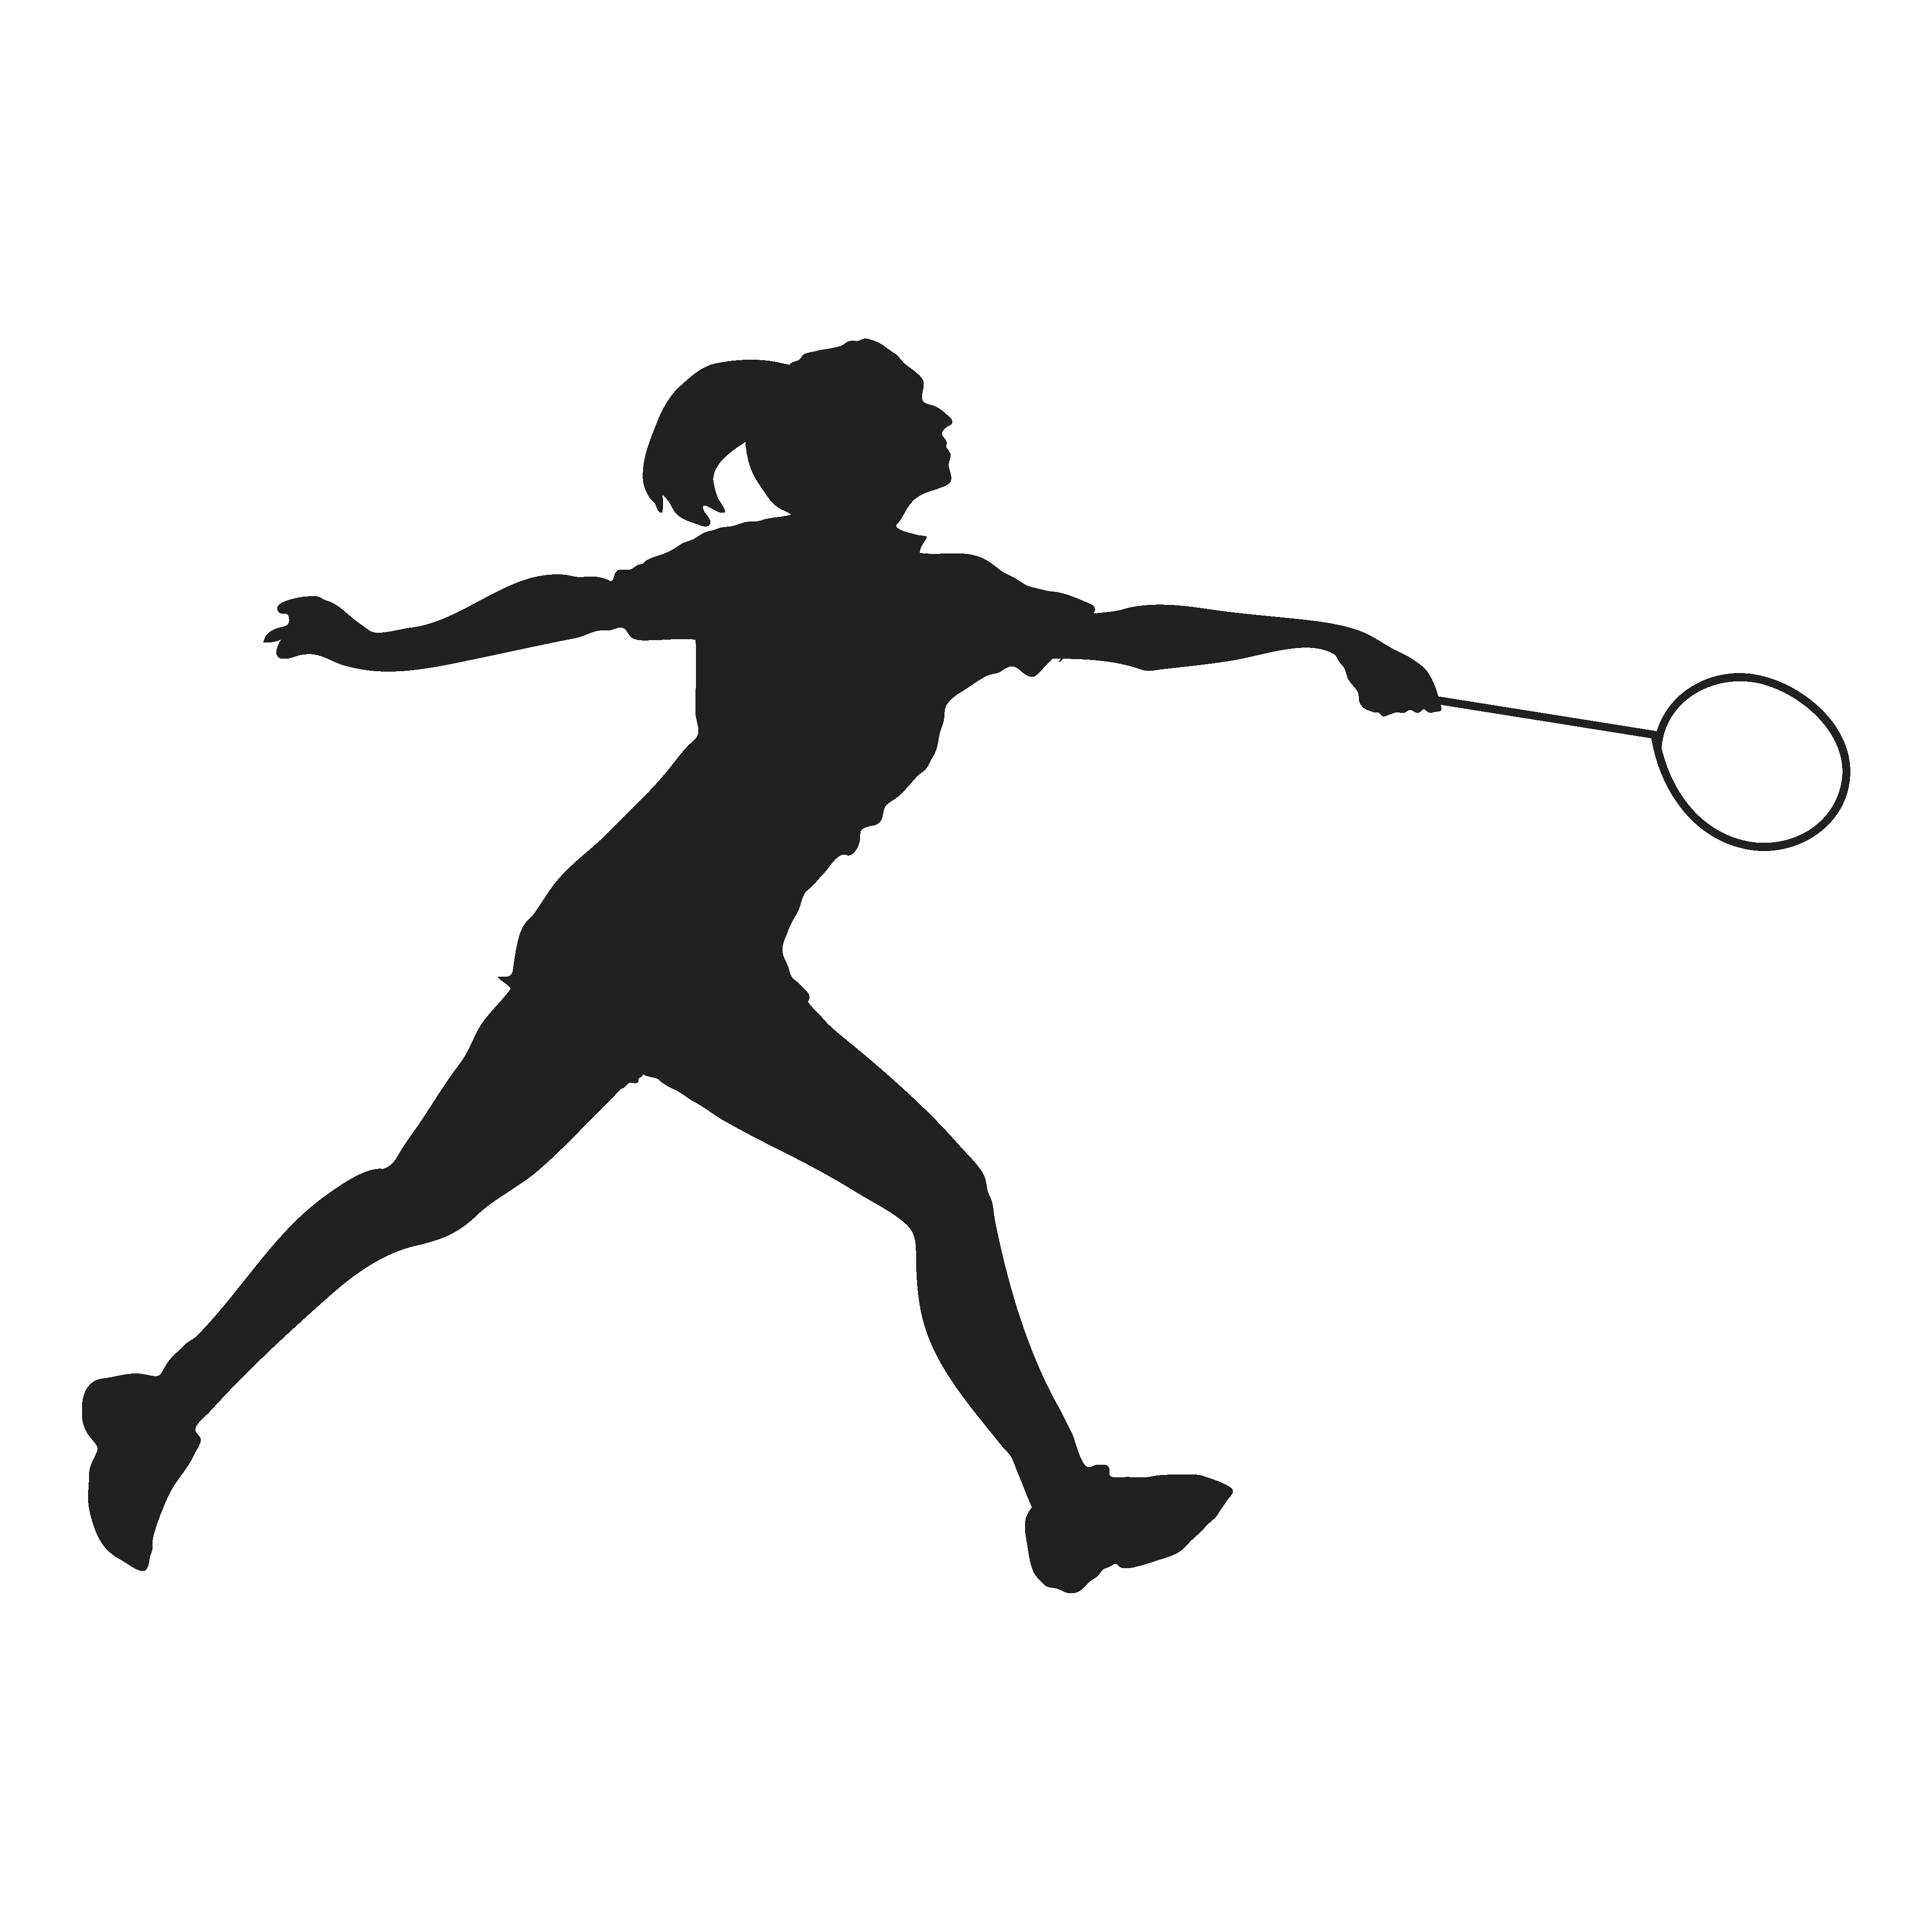 可爱的女孩打羽毛球 向量例证. 插画 包括有 现场, 男朋友, 更加亲切, 愉快, 运动, 健康, 图象 - 160914227